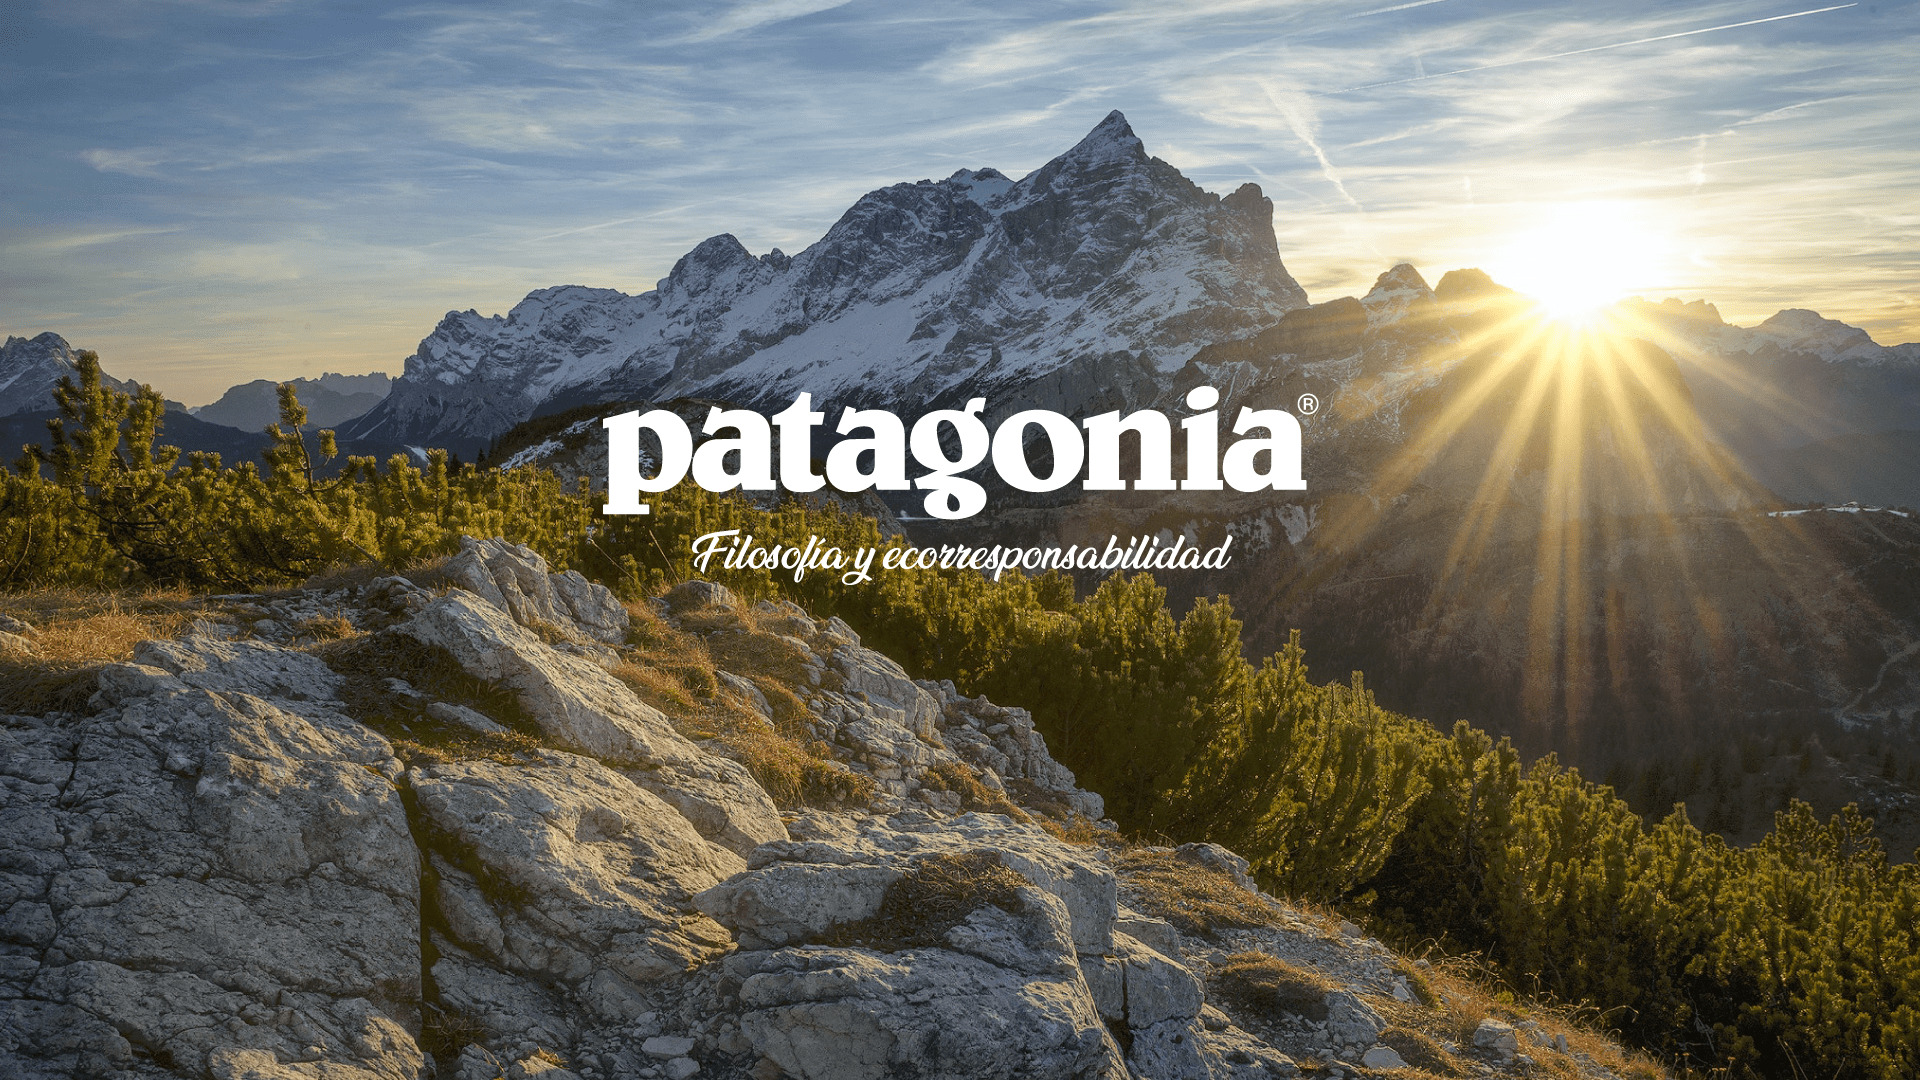 Patagonia: La marca de ropa outdoor con filosofía y ecorresponsabilidad